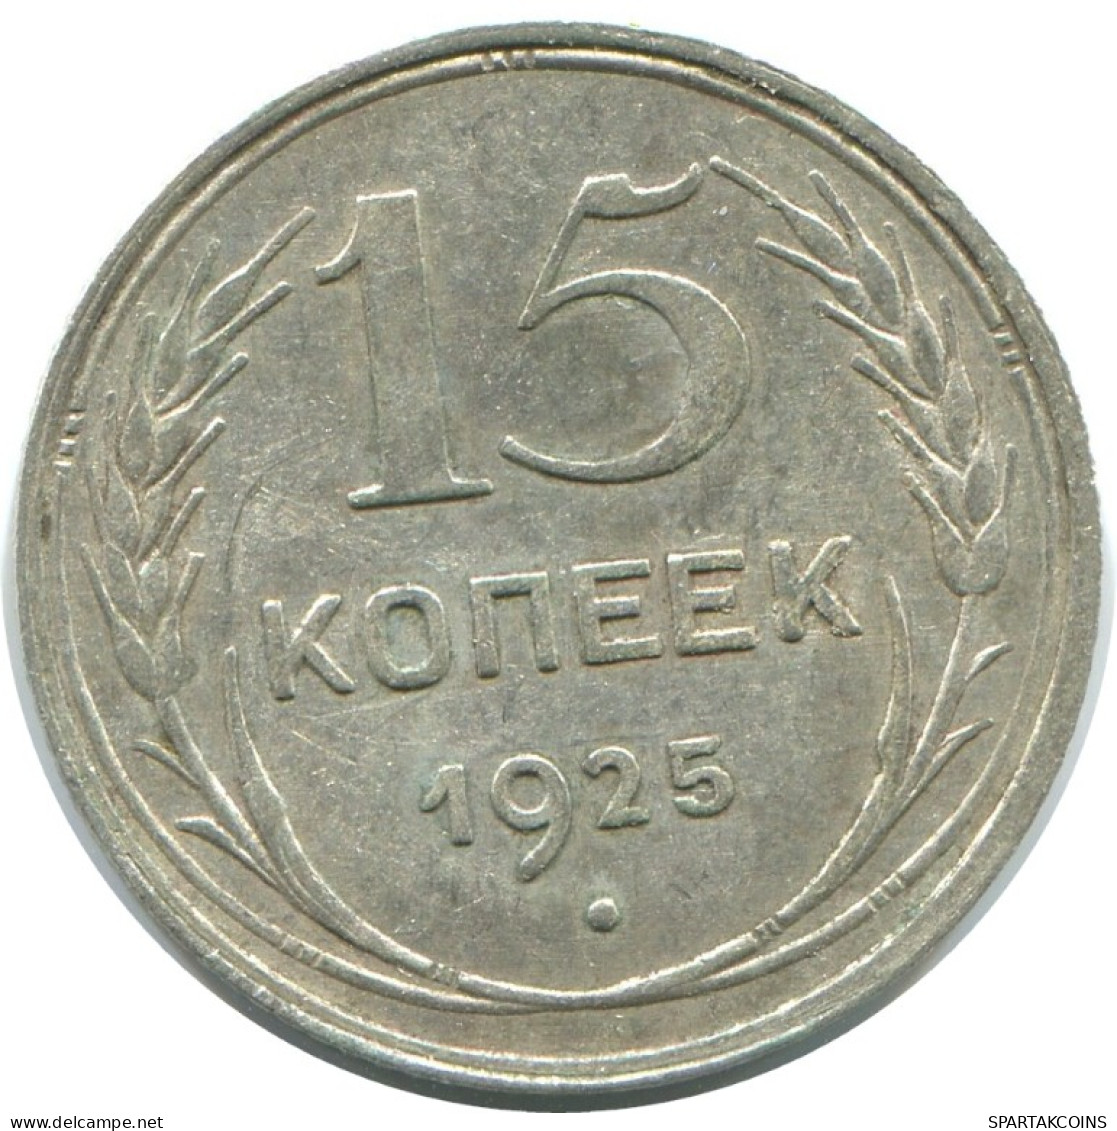 15 KOPEKS 1925 RUSSLAND RUSSIA USSR SILBER Münze HIGH GRADE #AF268.4.D.A - Russie